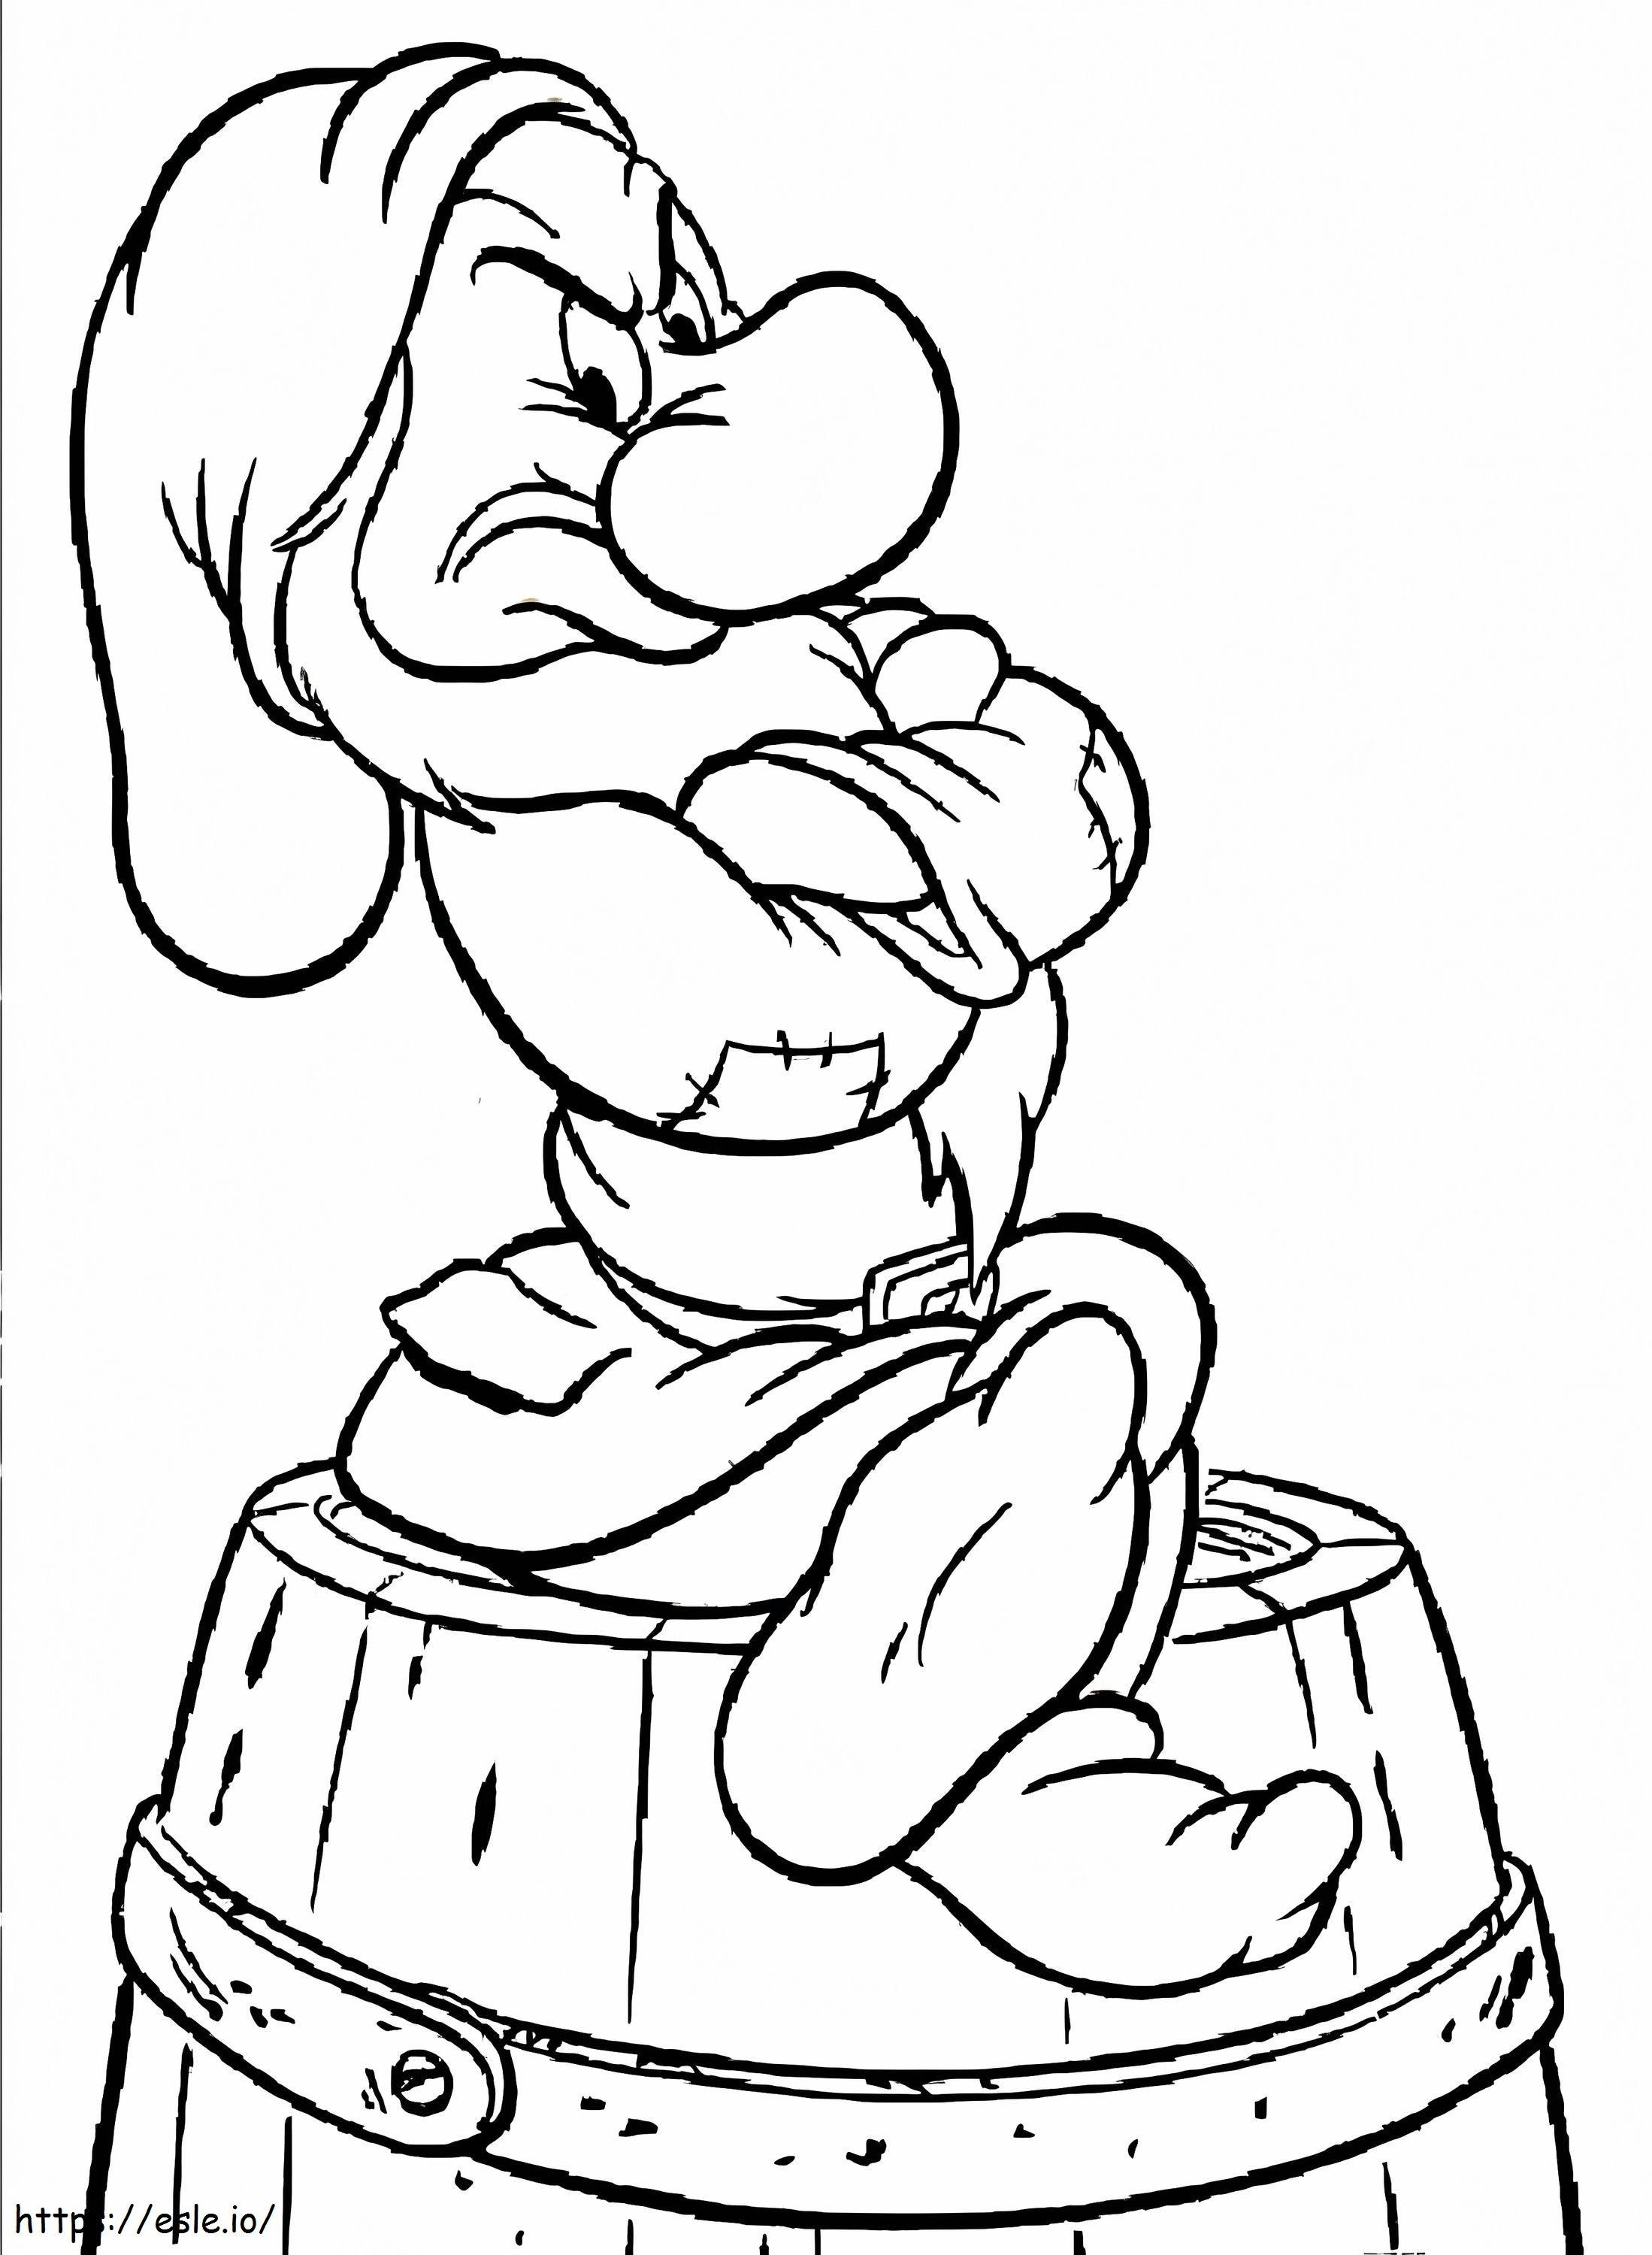 Grumpy Dwarf 2 coloring page